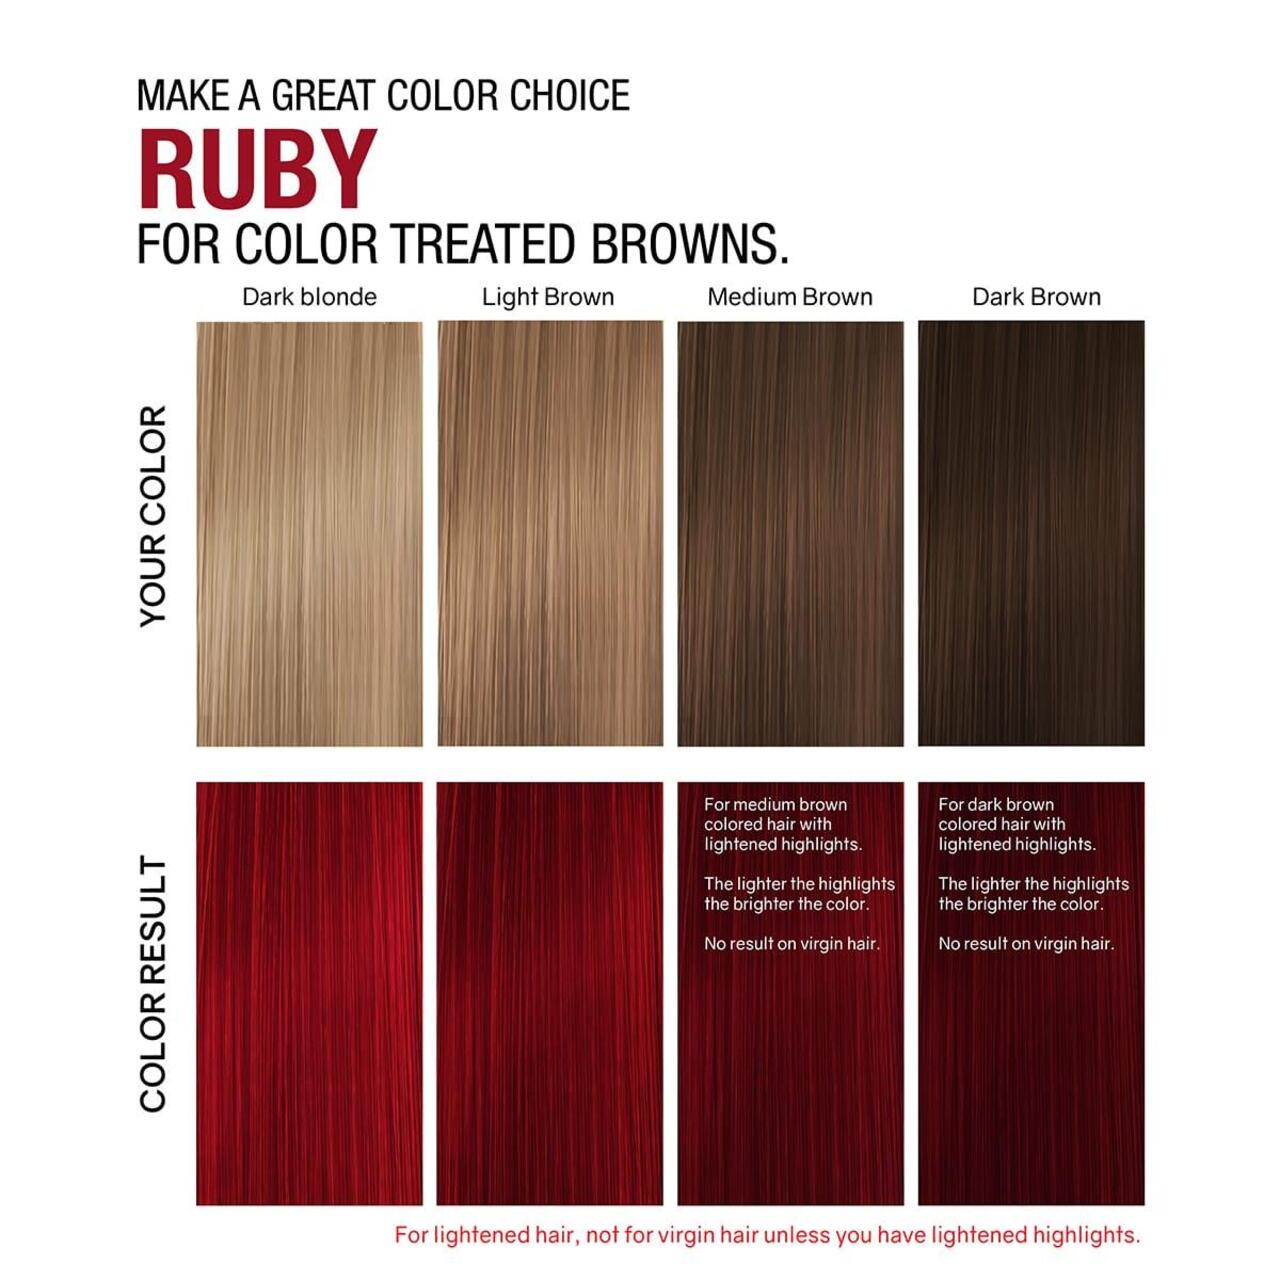 Оцветяващ шампоан за руса и кестенява коса с кичури Celeb Gem Lites Ruby Colorwash